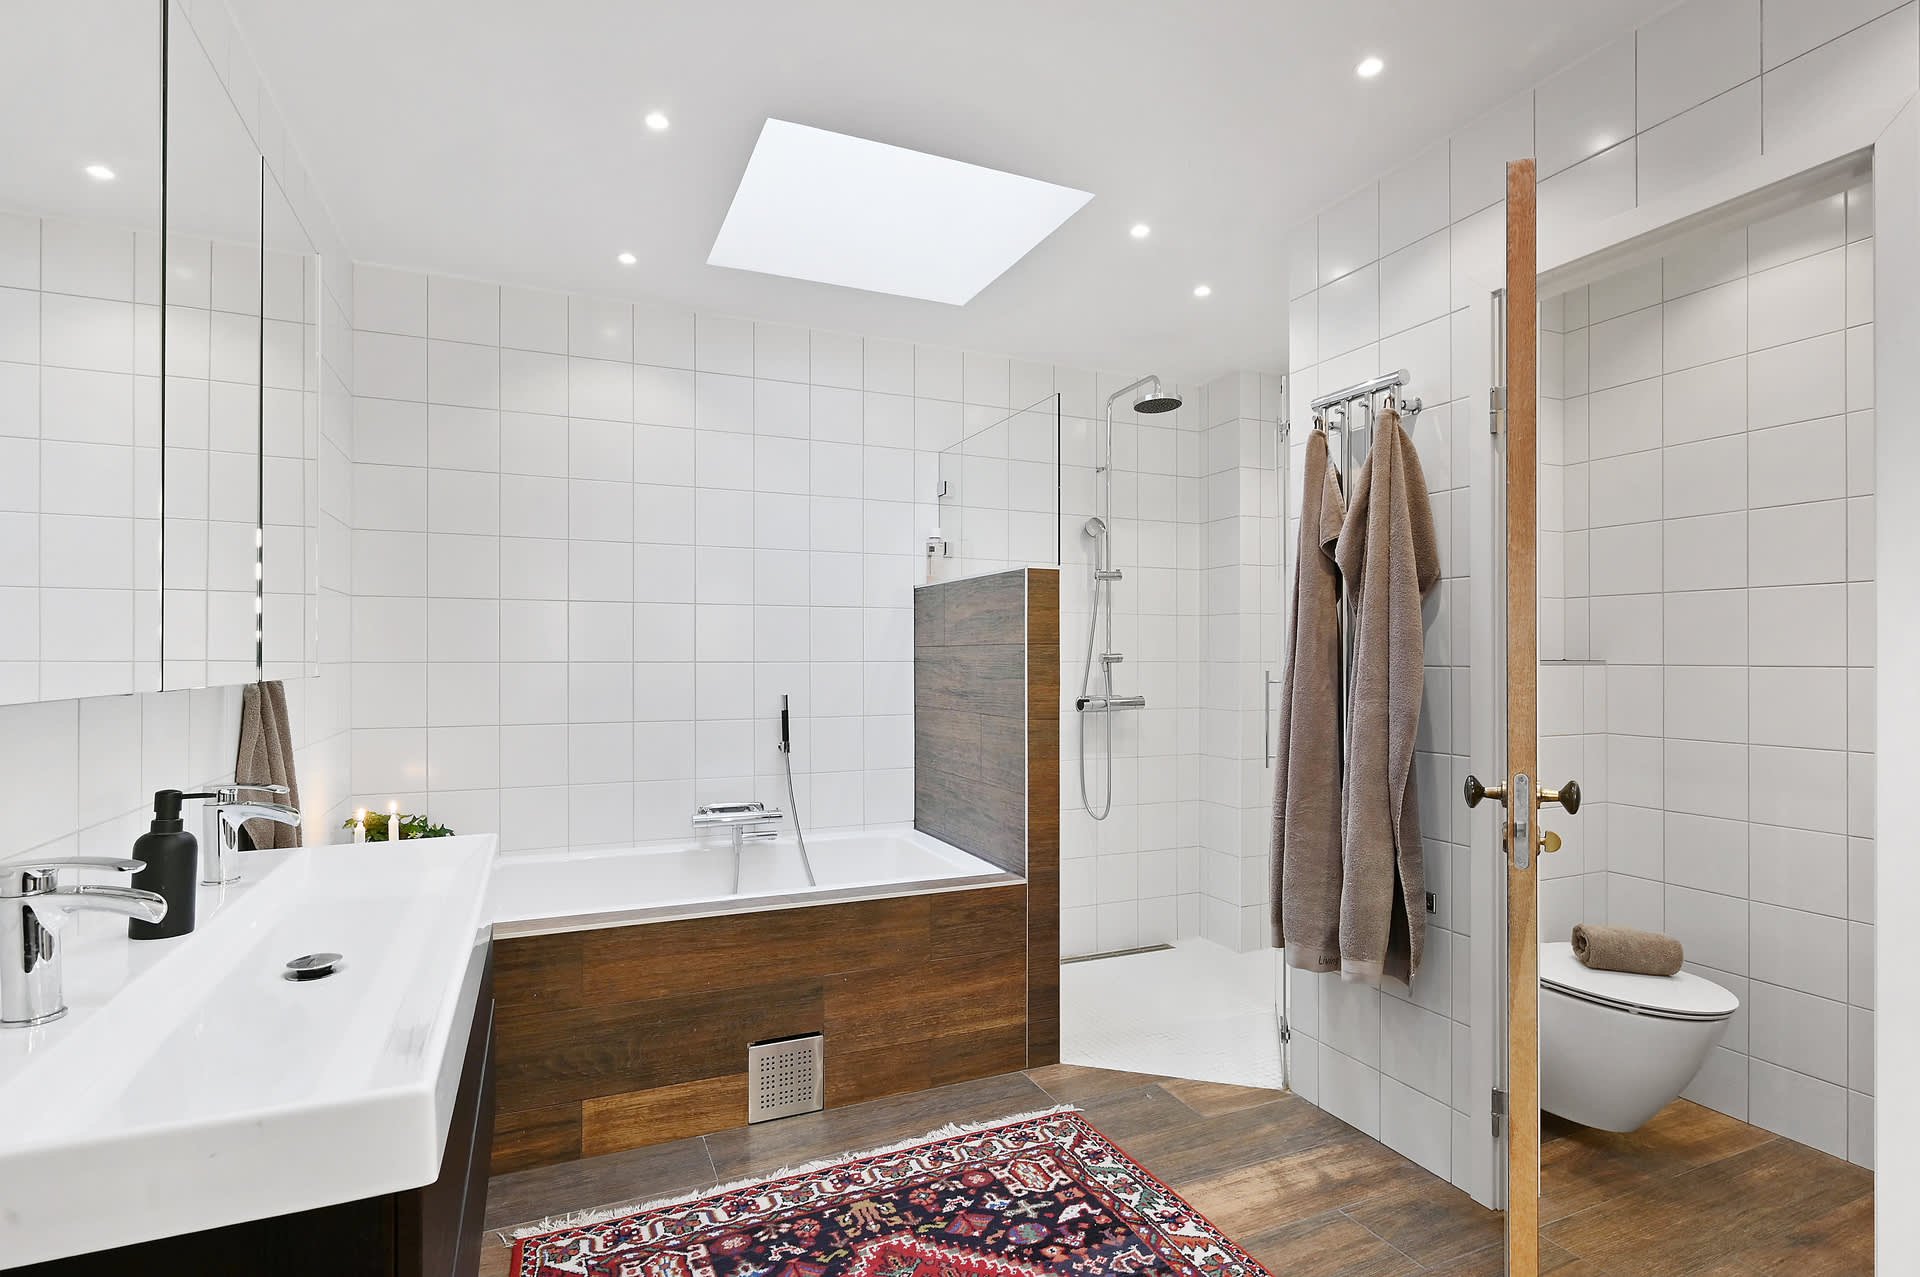 Generös dusch, inkaklat badkar och vägghängd wc i privat lösning. Två takfönster ger vackert ljusinsläpp!